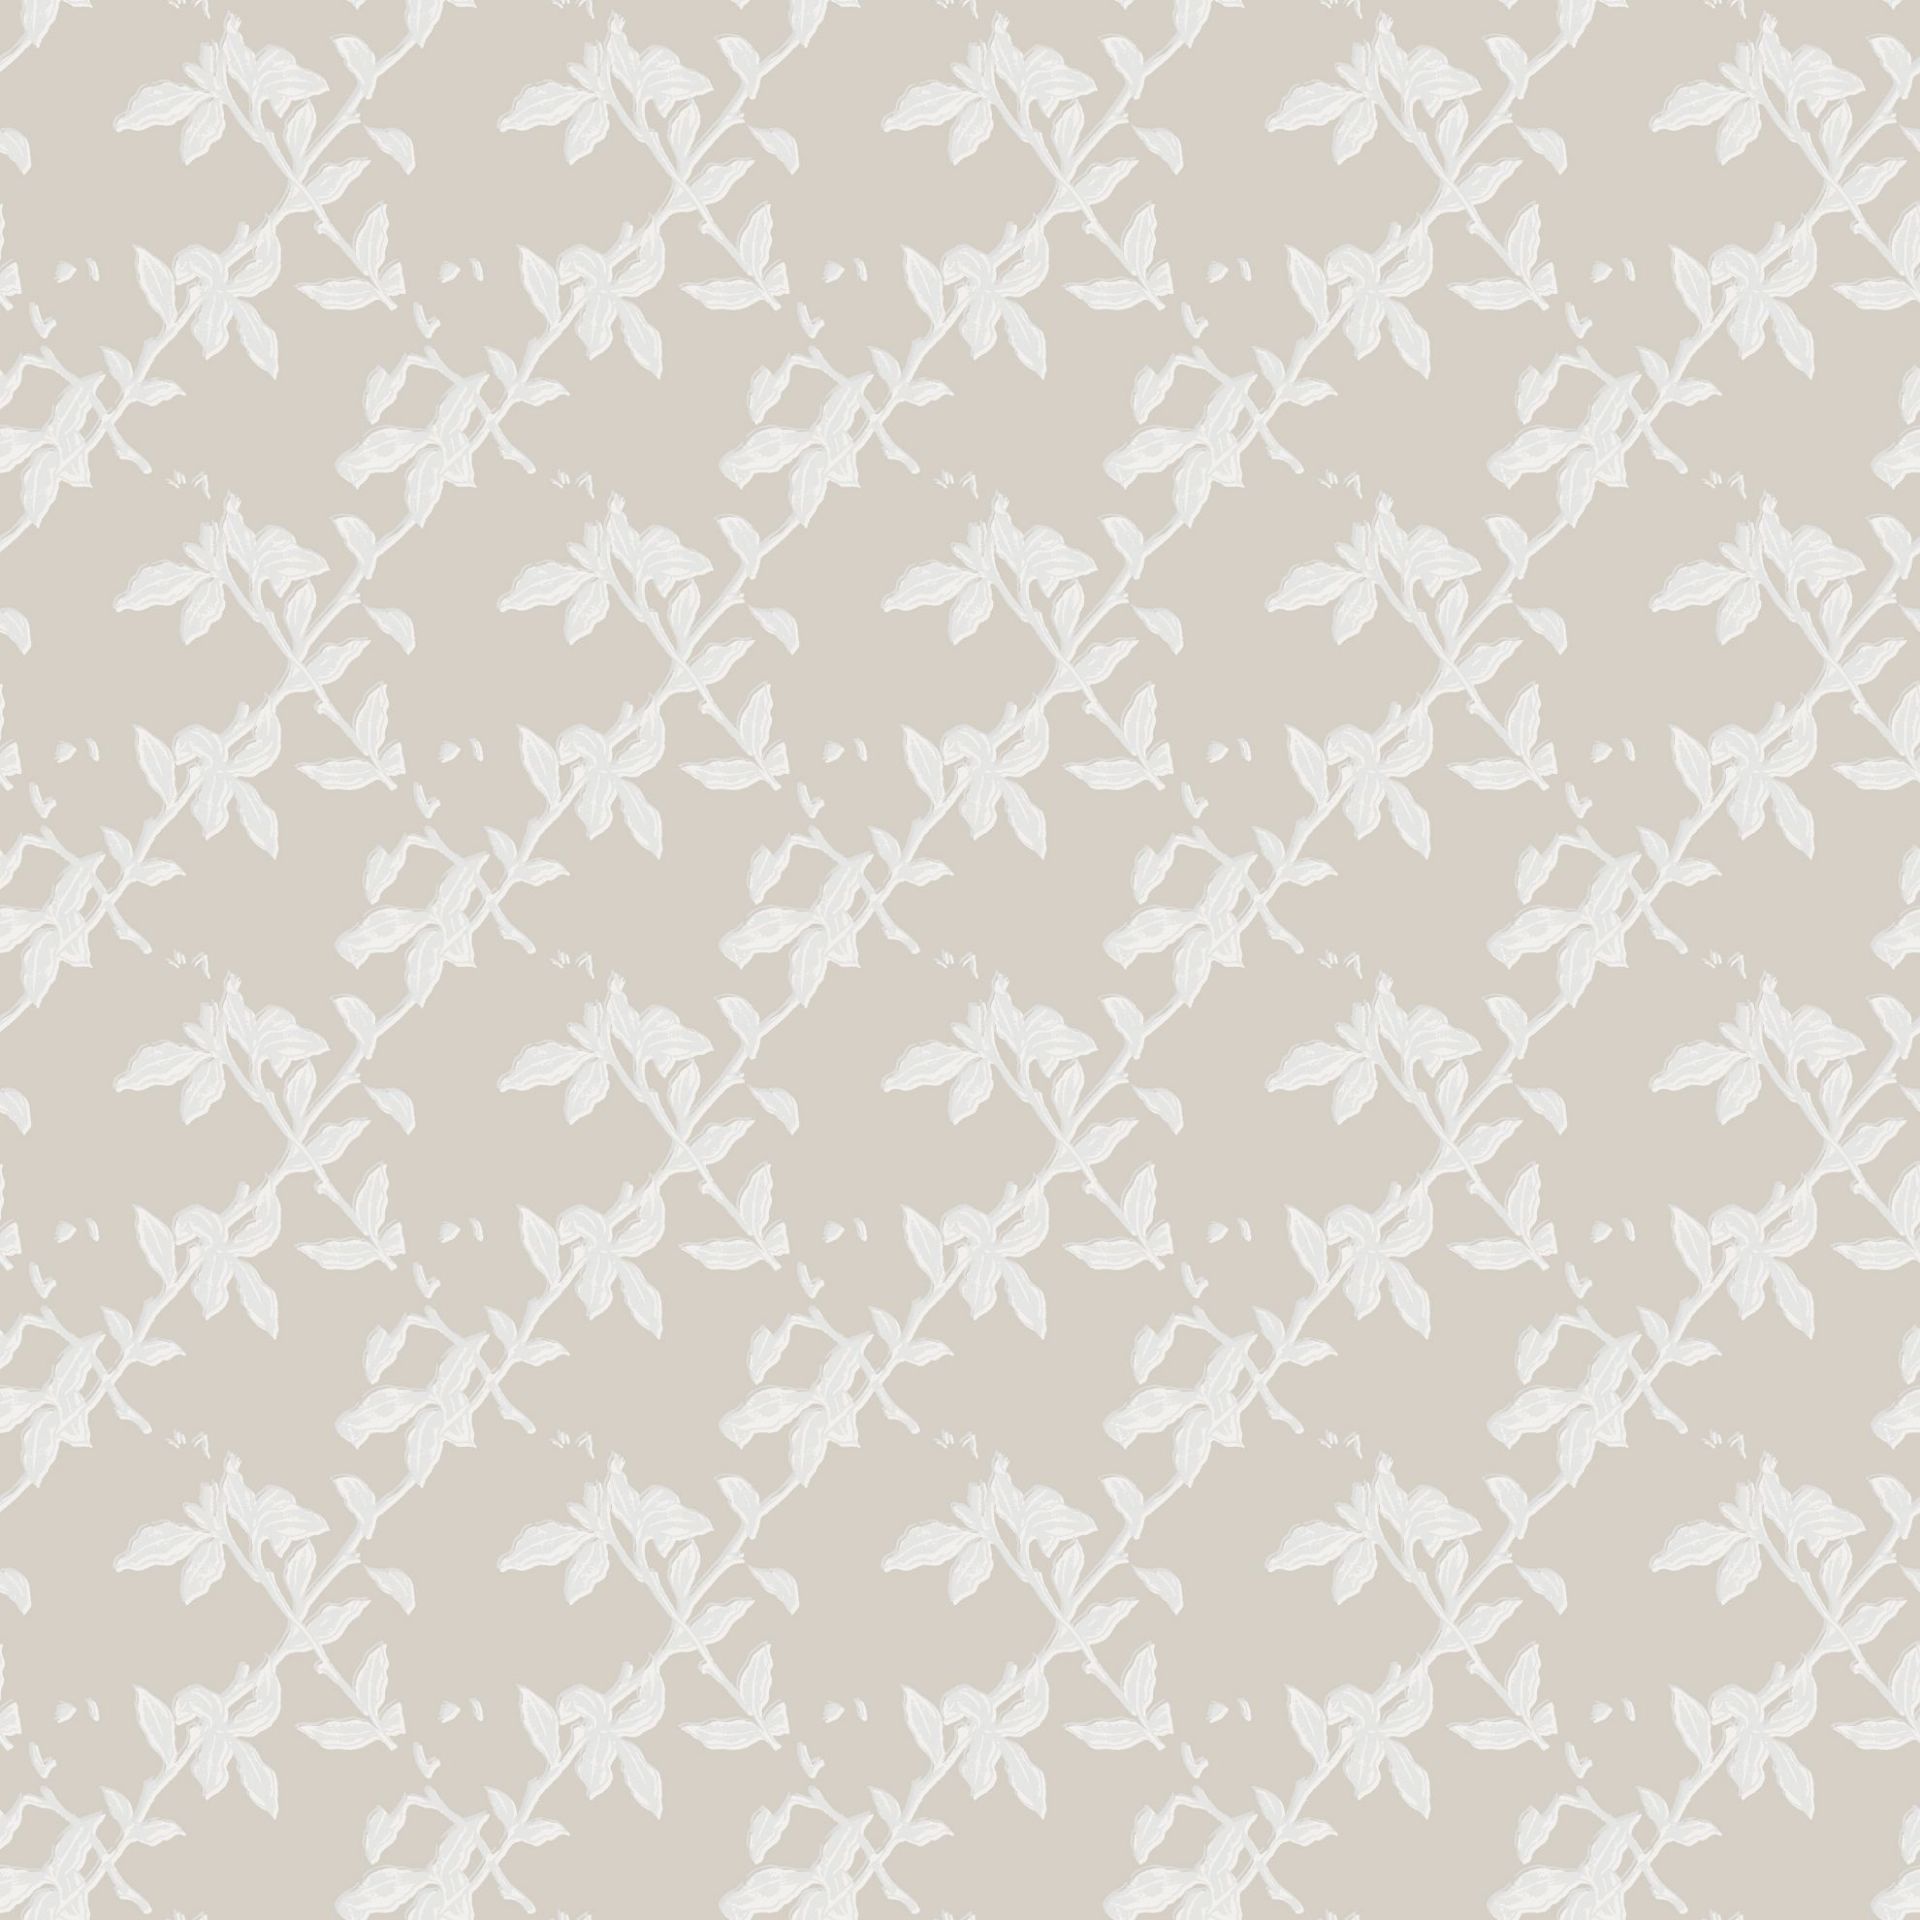 Nærbilde av Lycke Små Blad 2. Er en tapet med harlequin-mønster av bladverk i landlig stil. 